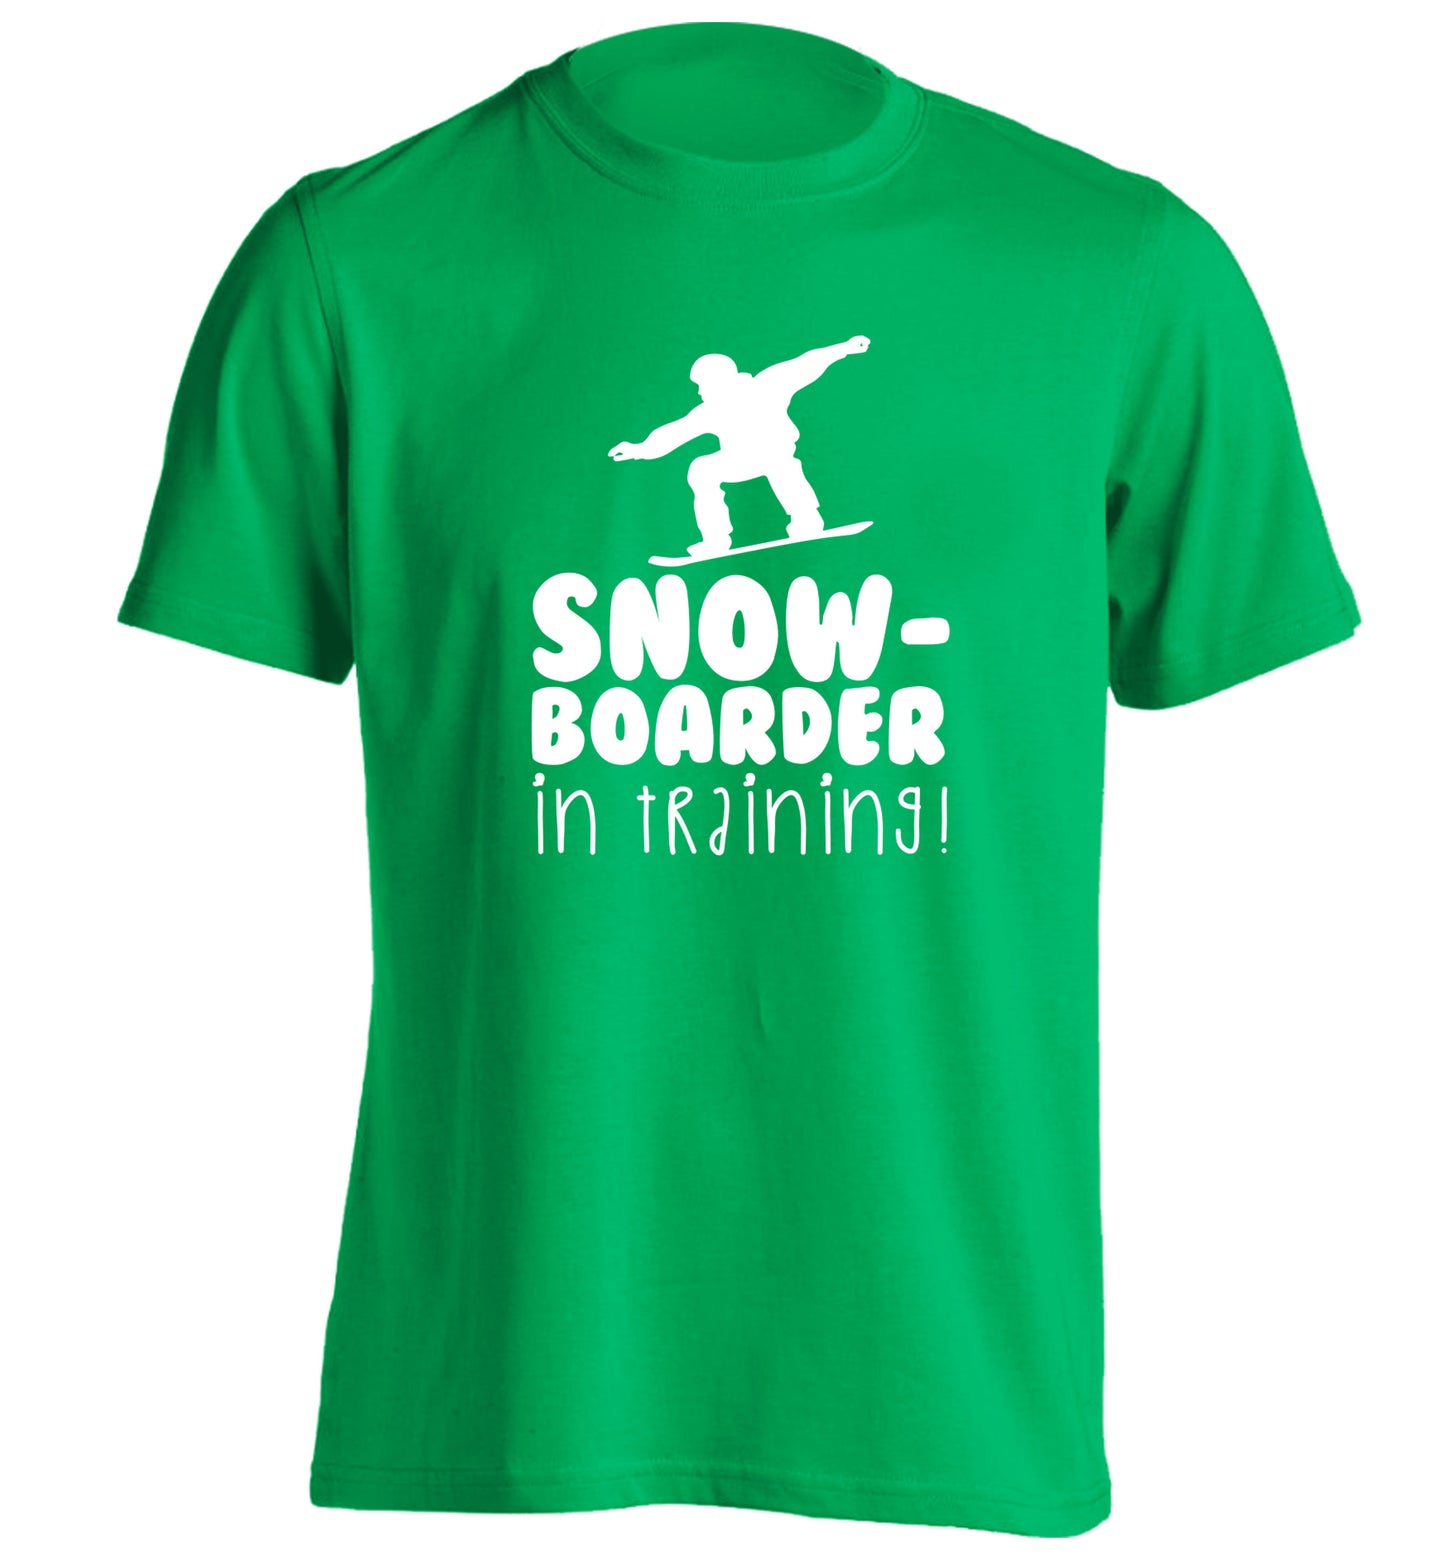 Snowboarder in training adults unisex green Tshirt 2XL